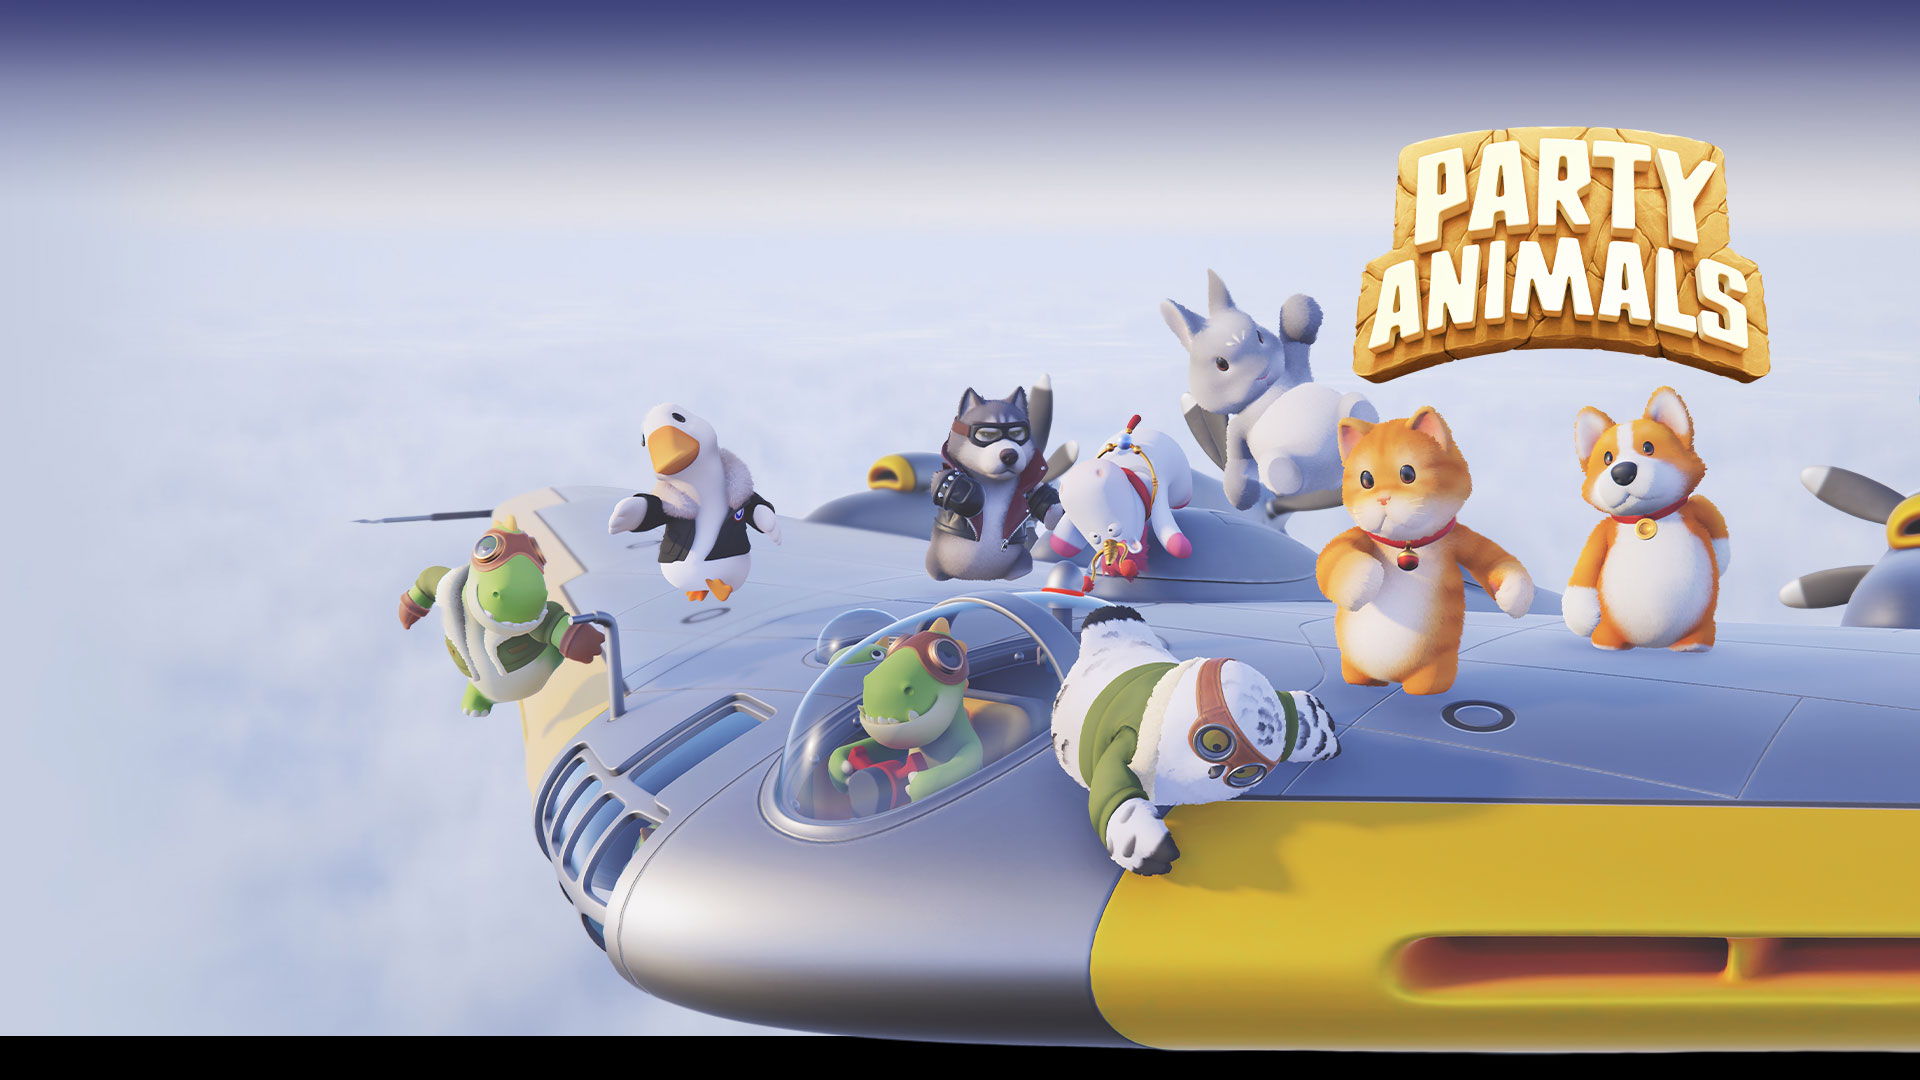 Party Animals, skupina zvieracích maskotov sa vznáša nad morom mrakov a zápasí na chrbte lietadla s pevnými krídlami.